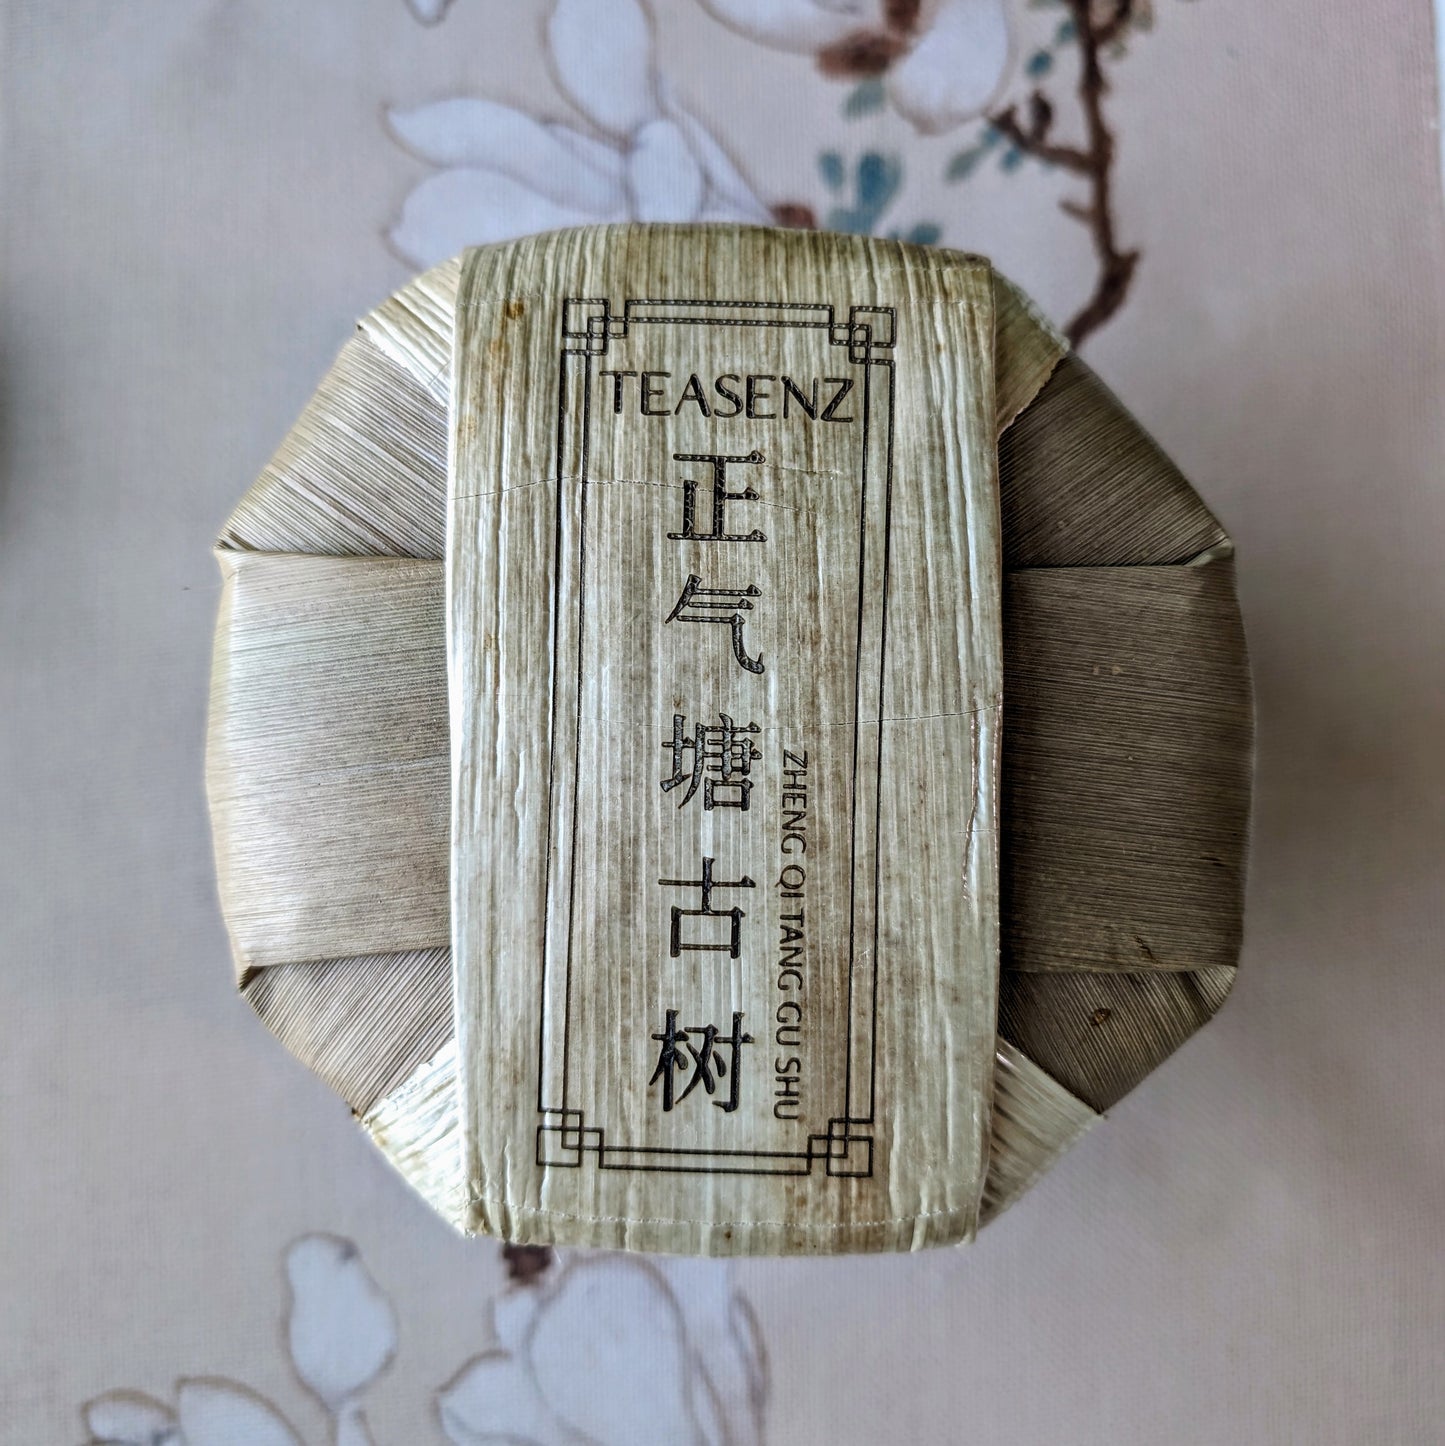 2023 Torta di tè Pu Erh Crudo degli Alberi Antichi di Zheng Qi Tang 200g